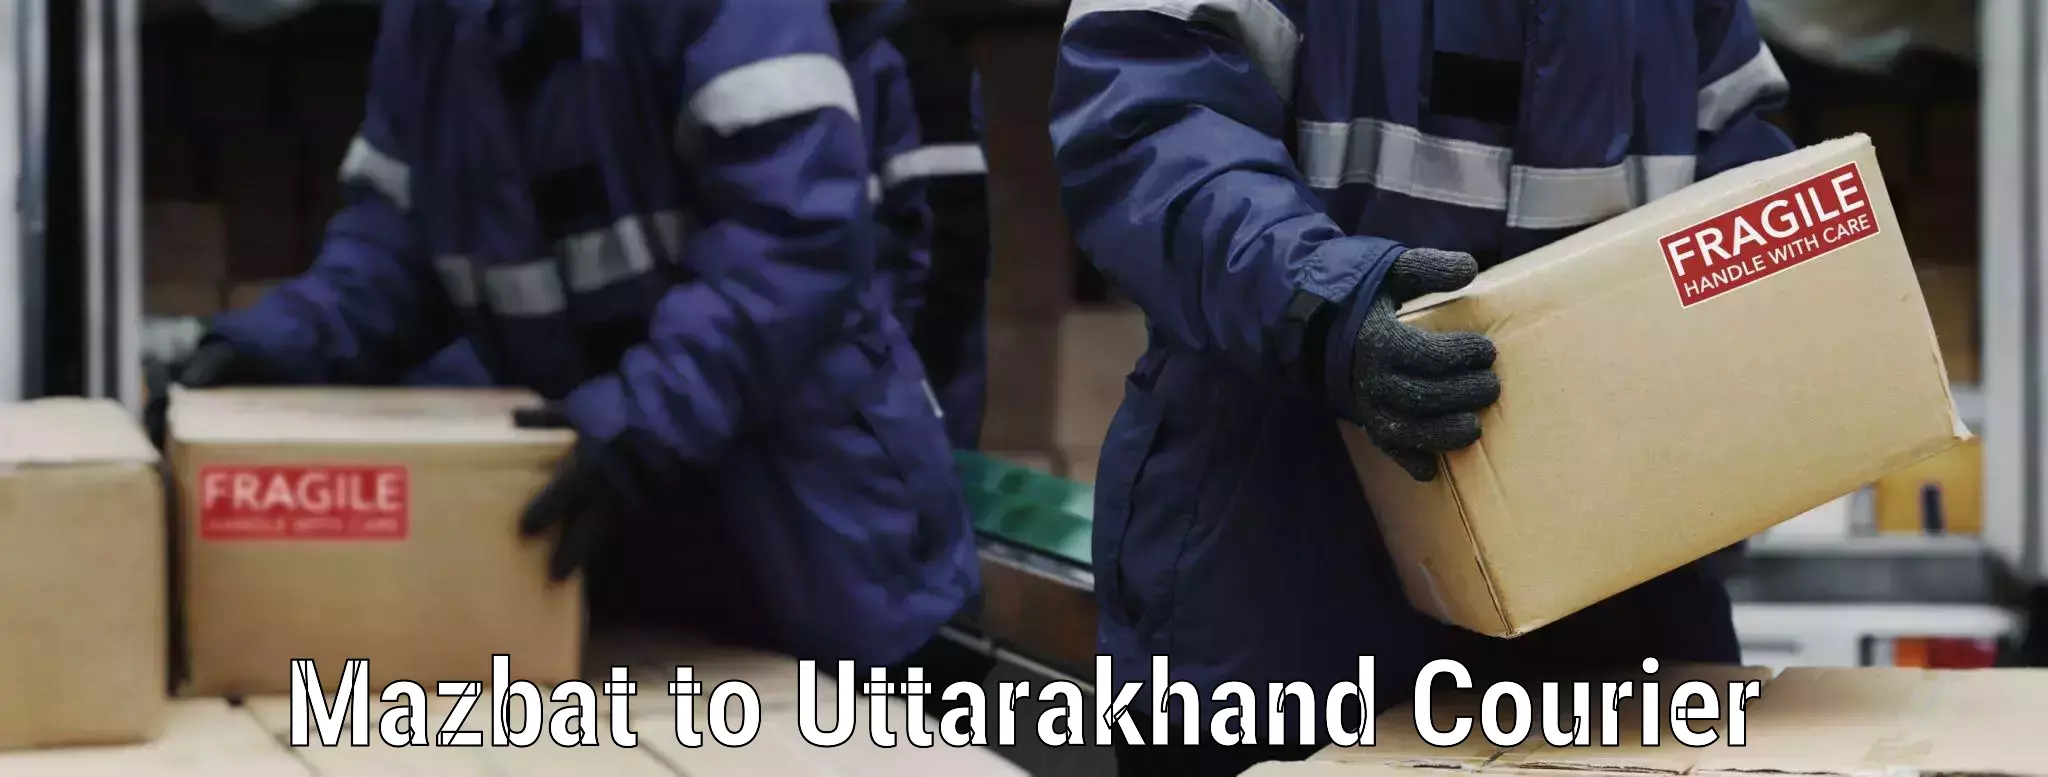 Dependable furniture movers Mazbat to Uttarakhand